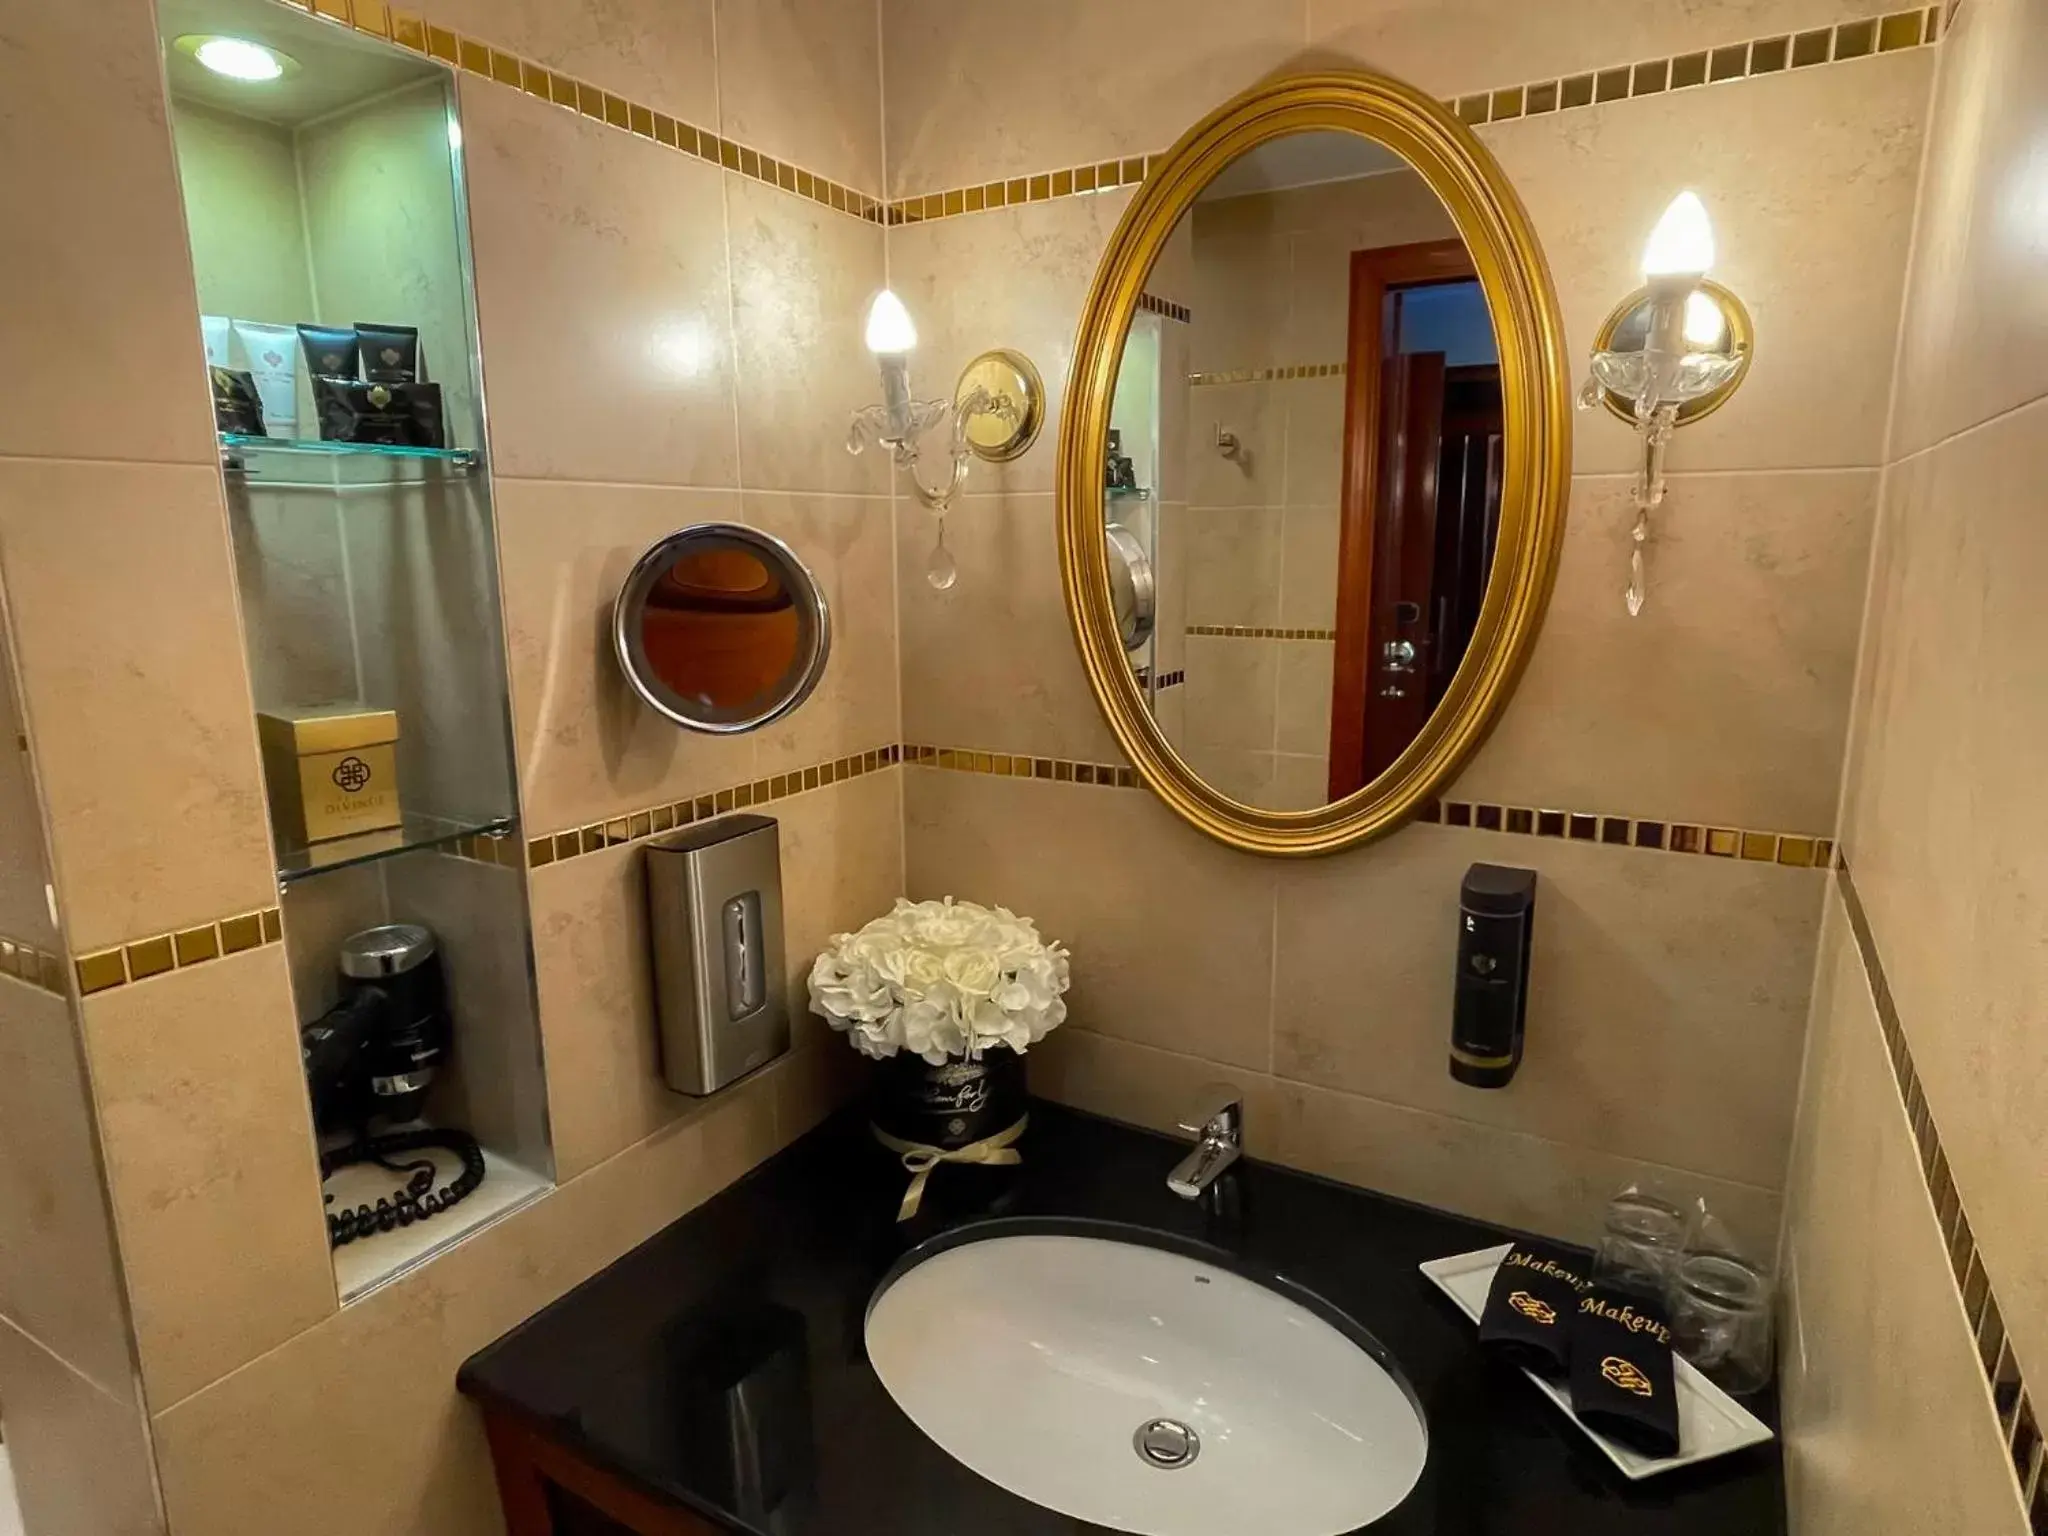 Bathroom in Hotel Divinus